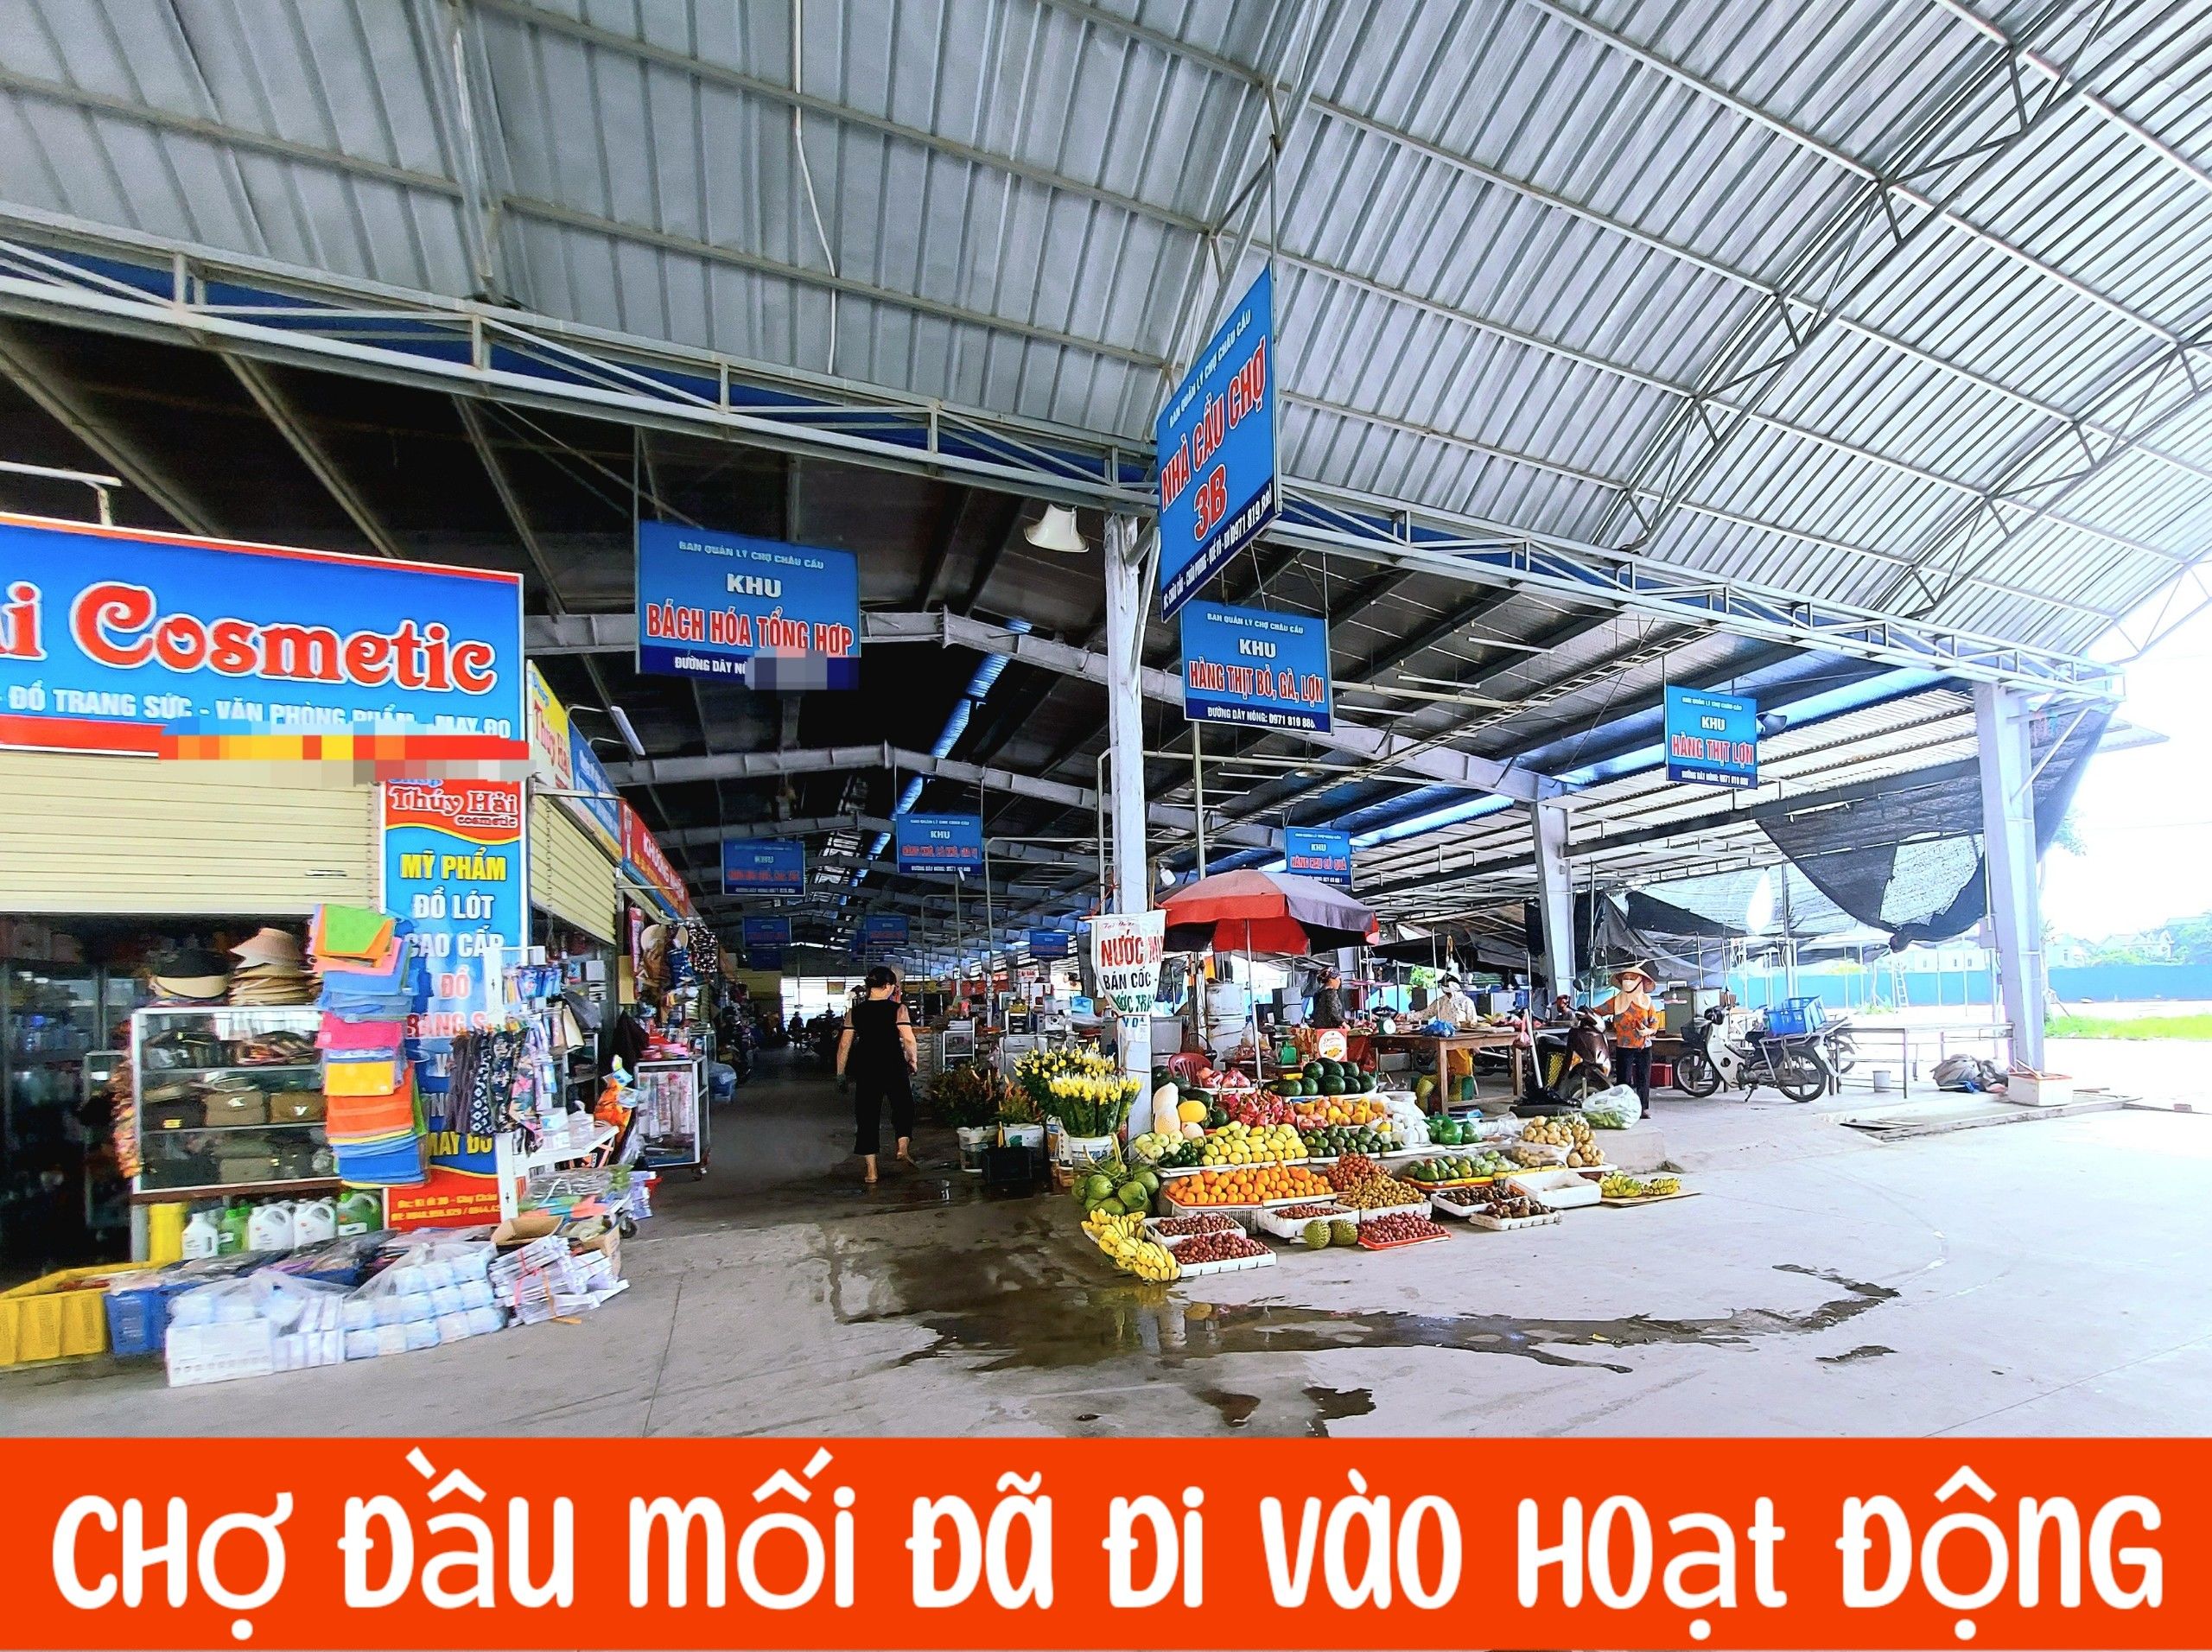 Shop Chợ 2 Tầng Khép Kín, Vừa Ở Vừa Kinh Doanh Được Luôn Tại Chợ Đầu Mối Châu Cầu, Quế Võ